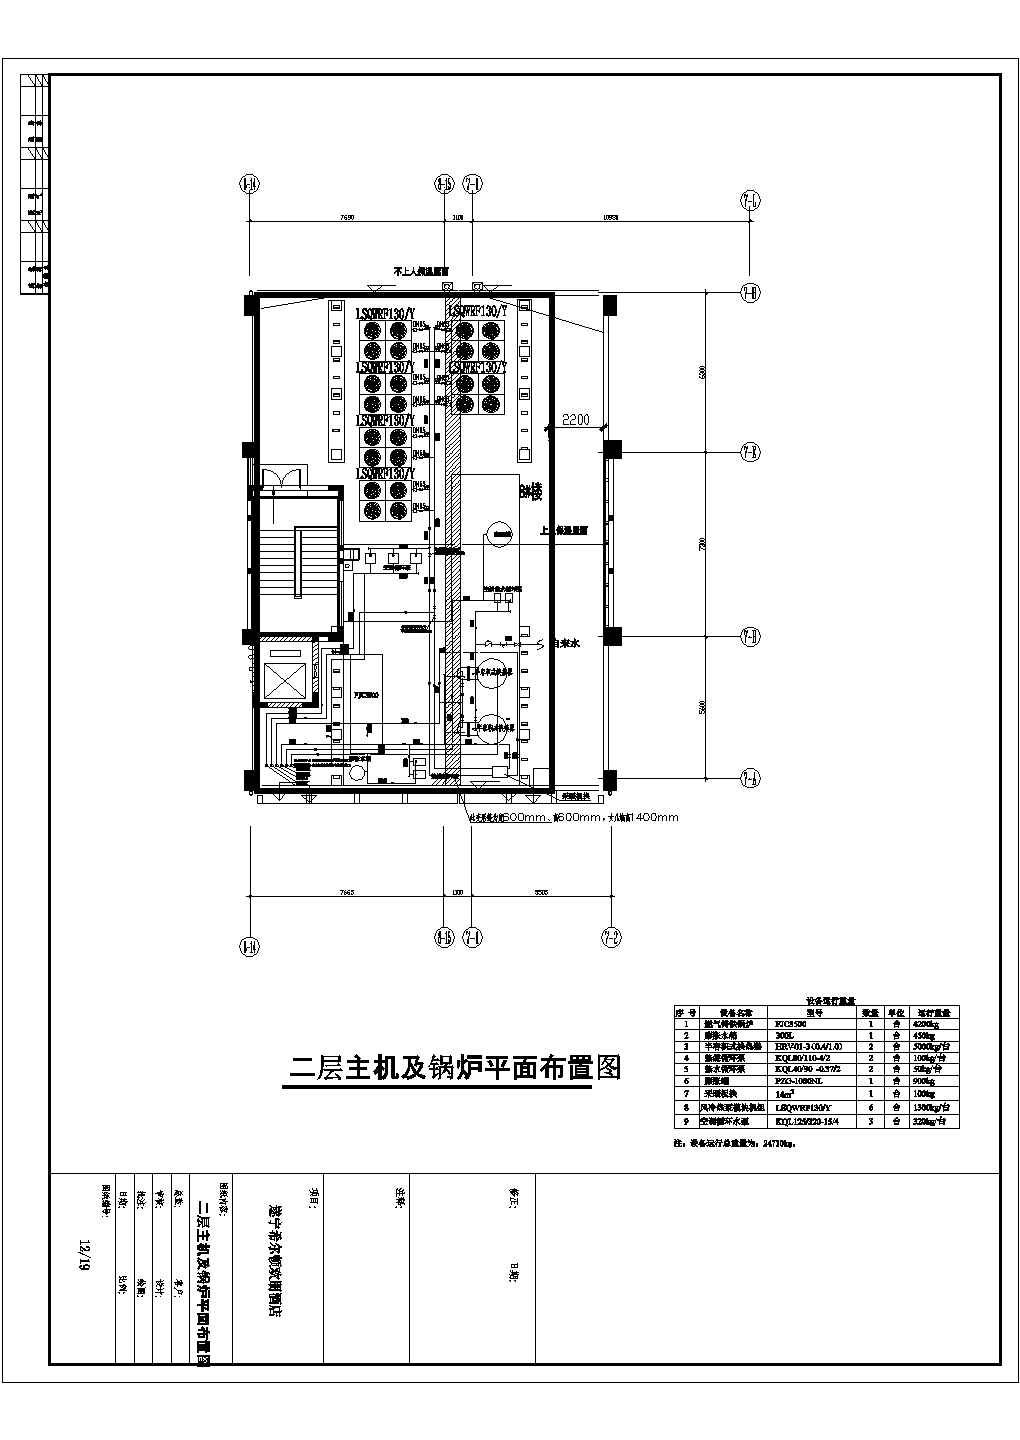 某11层酒店中央空调设计施工图CAD